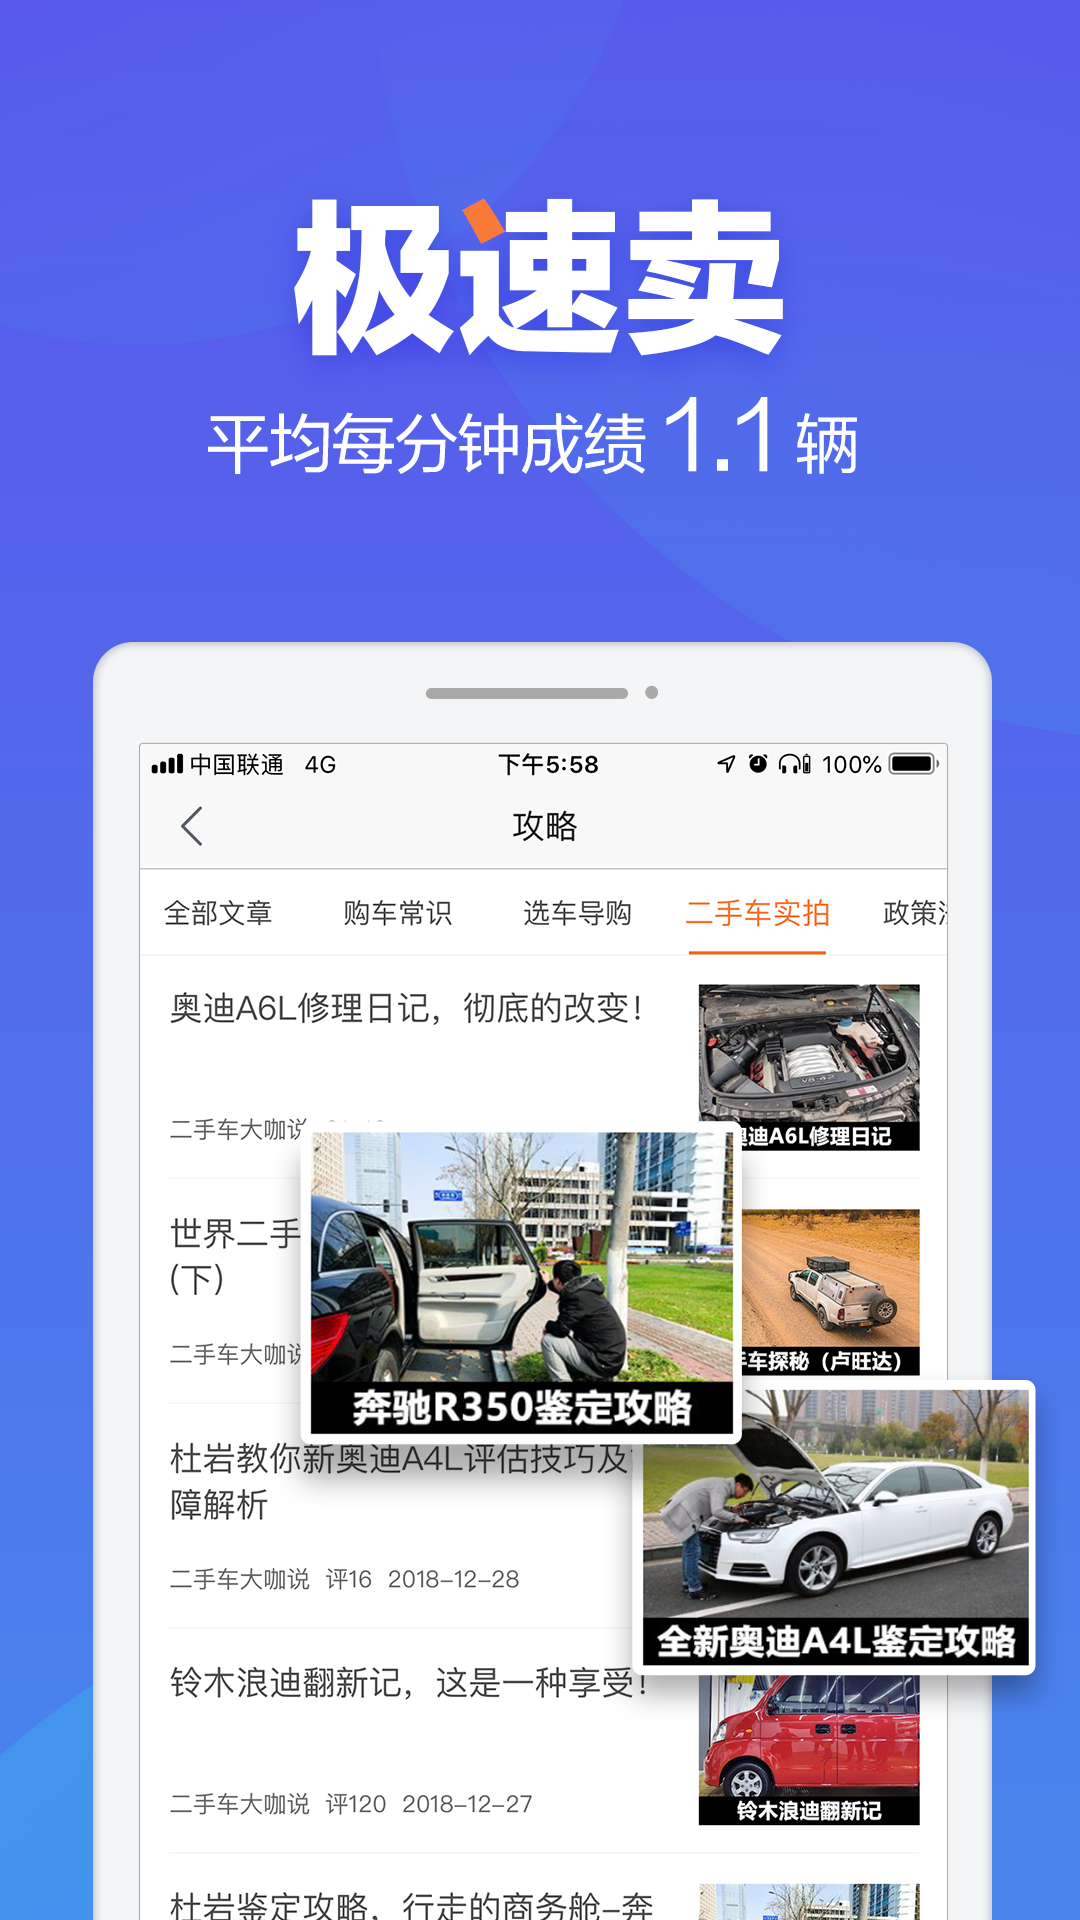 二手车之家app下载软件8.48.0